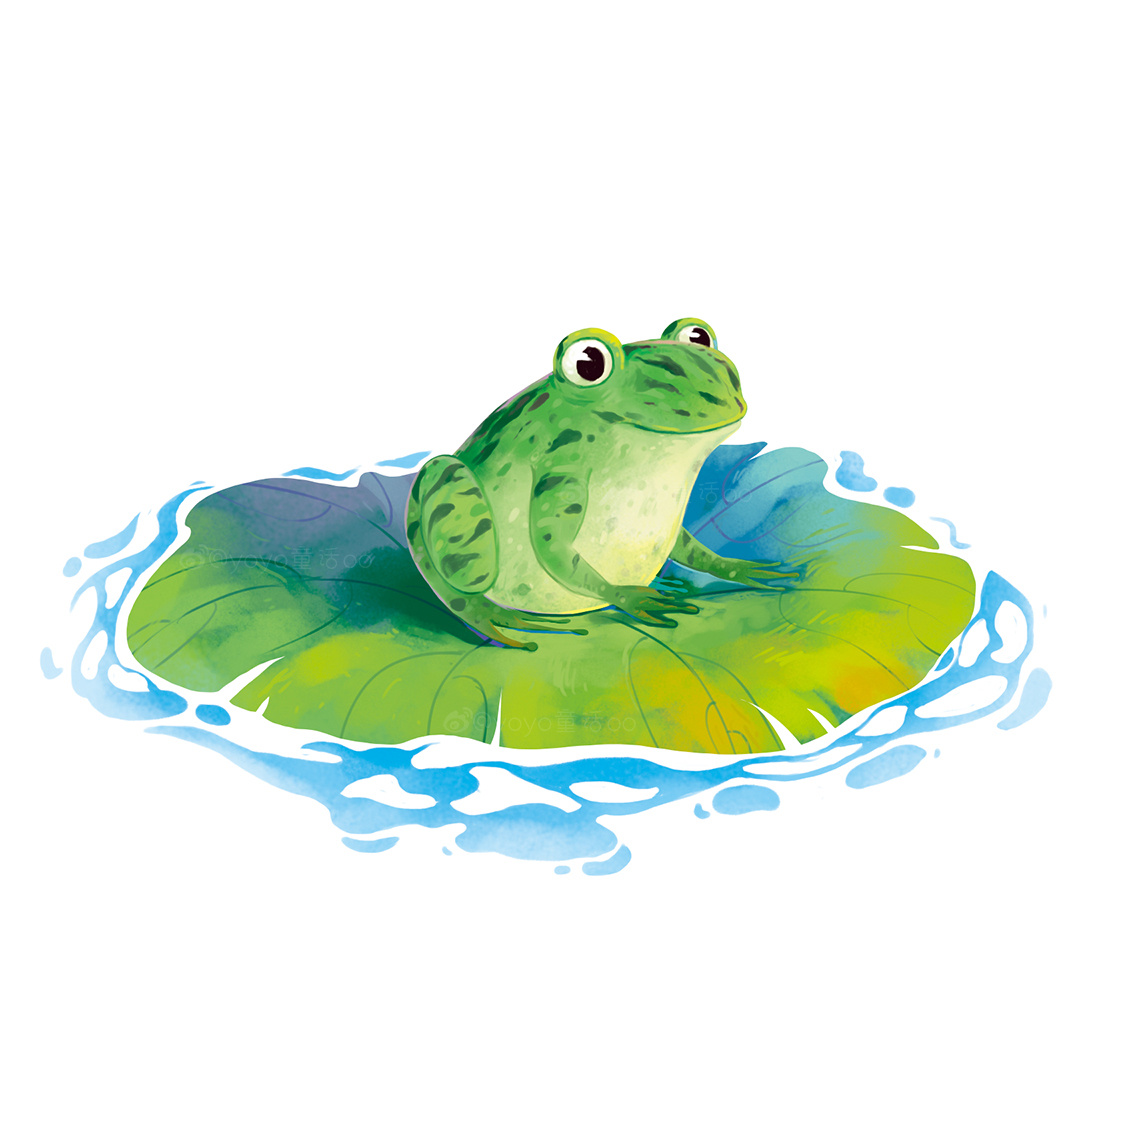 教你画简单有趣的水彩画教程 活泼可爱的小青蛙画法╭★肉丁网